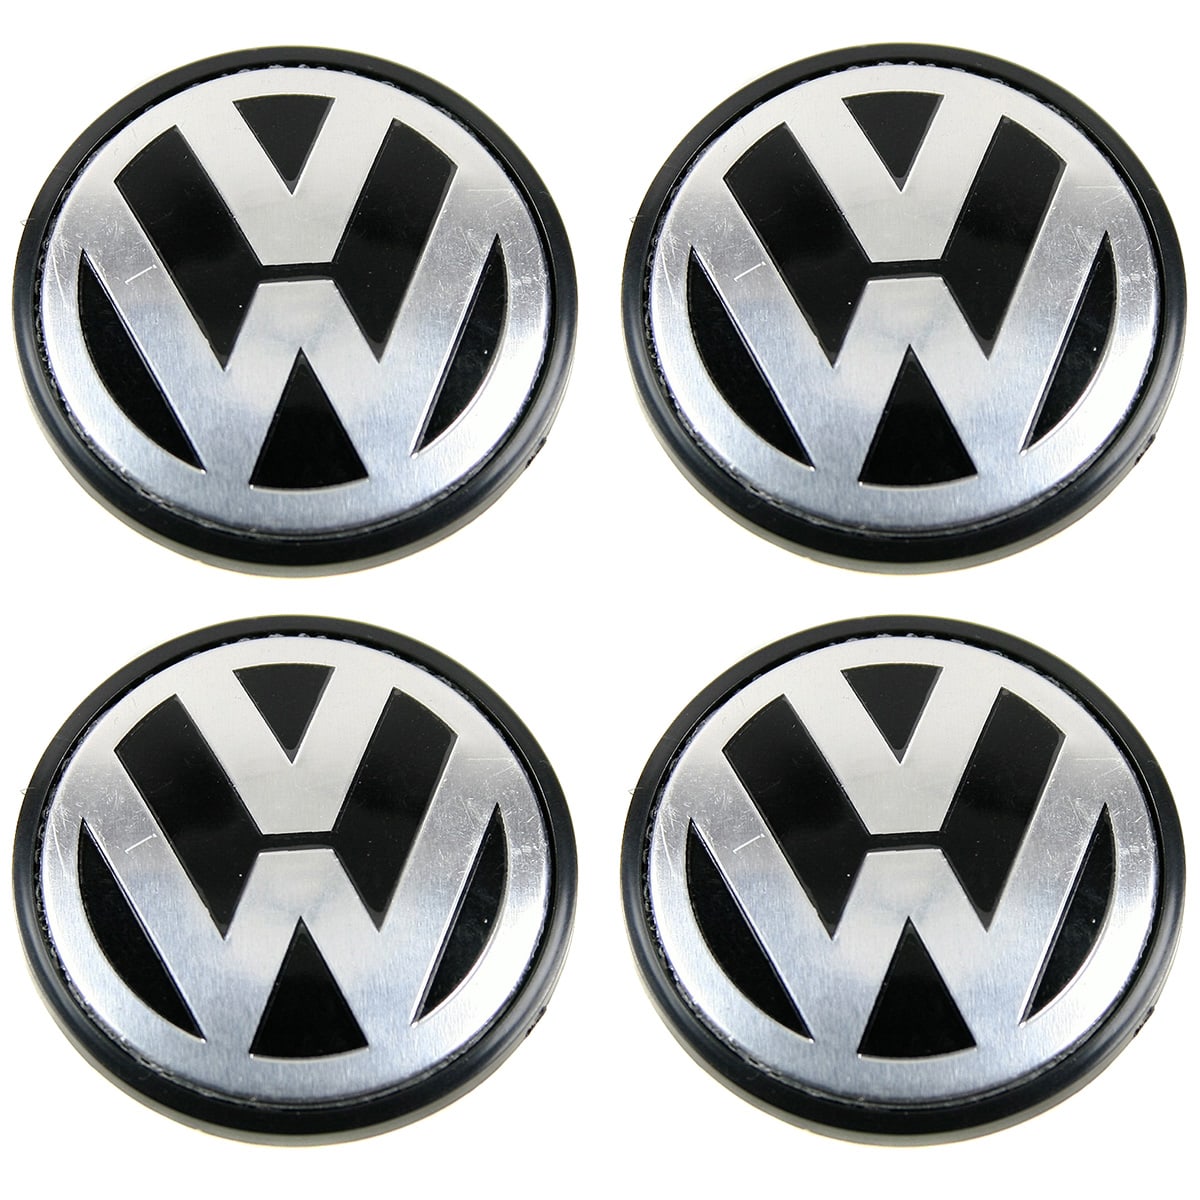 Caches Moyeux centre de roues VW 65mm logo chrome fond noir.